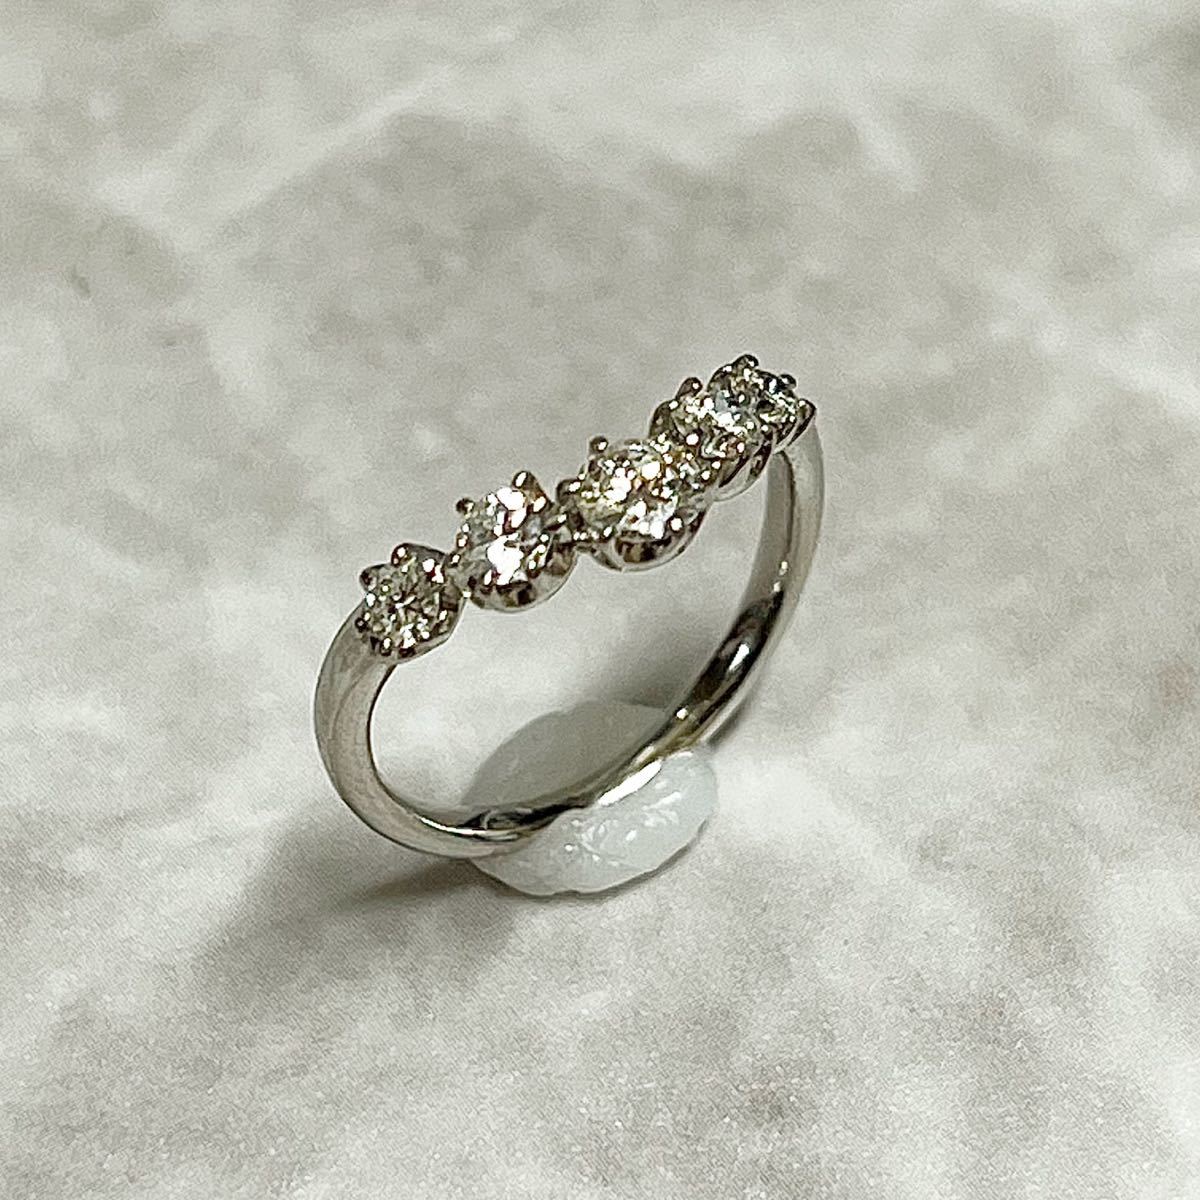 売り込み 婚約指輪 安い エンゲージリング プラチナ ダイヤモンド 0.4